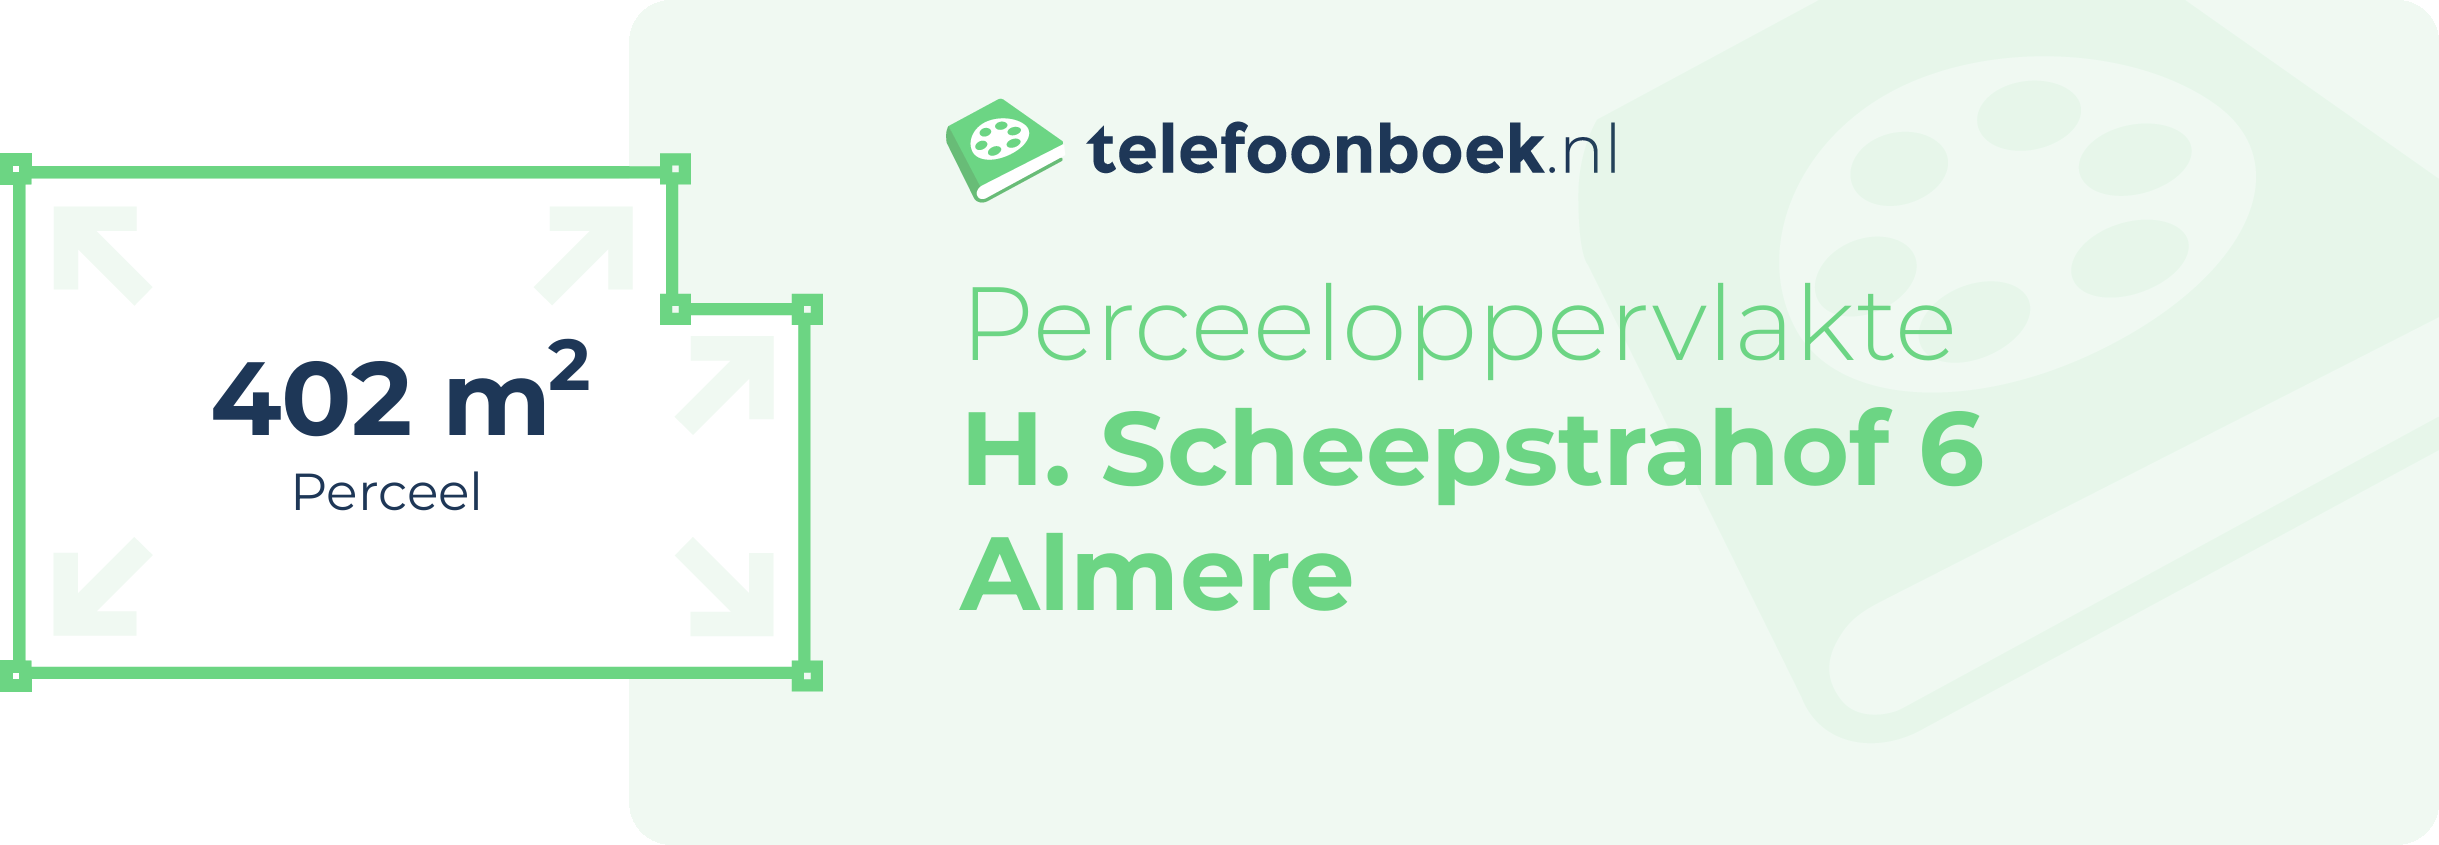 Perceeloppervlakte H. Scheepstrahof 6 Almere